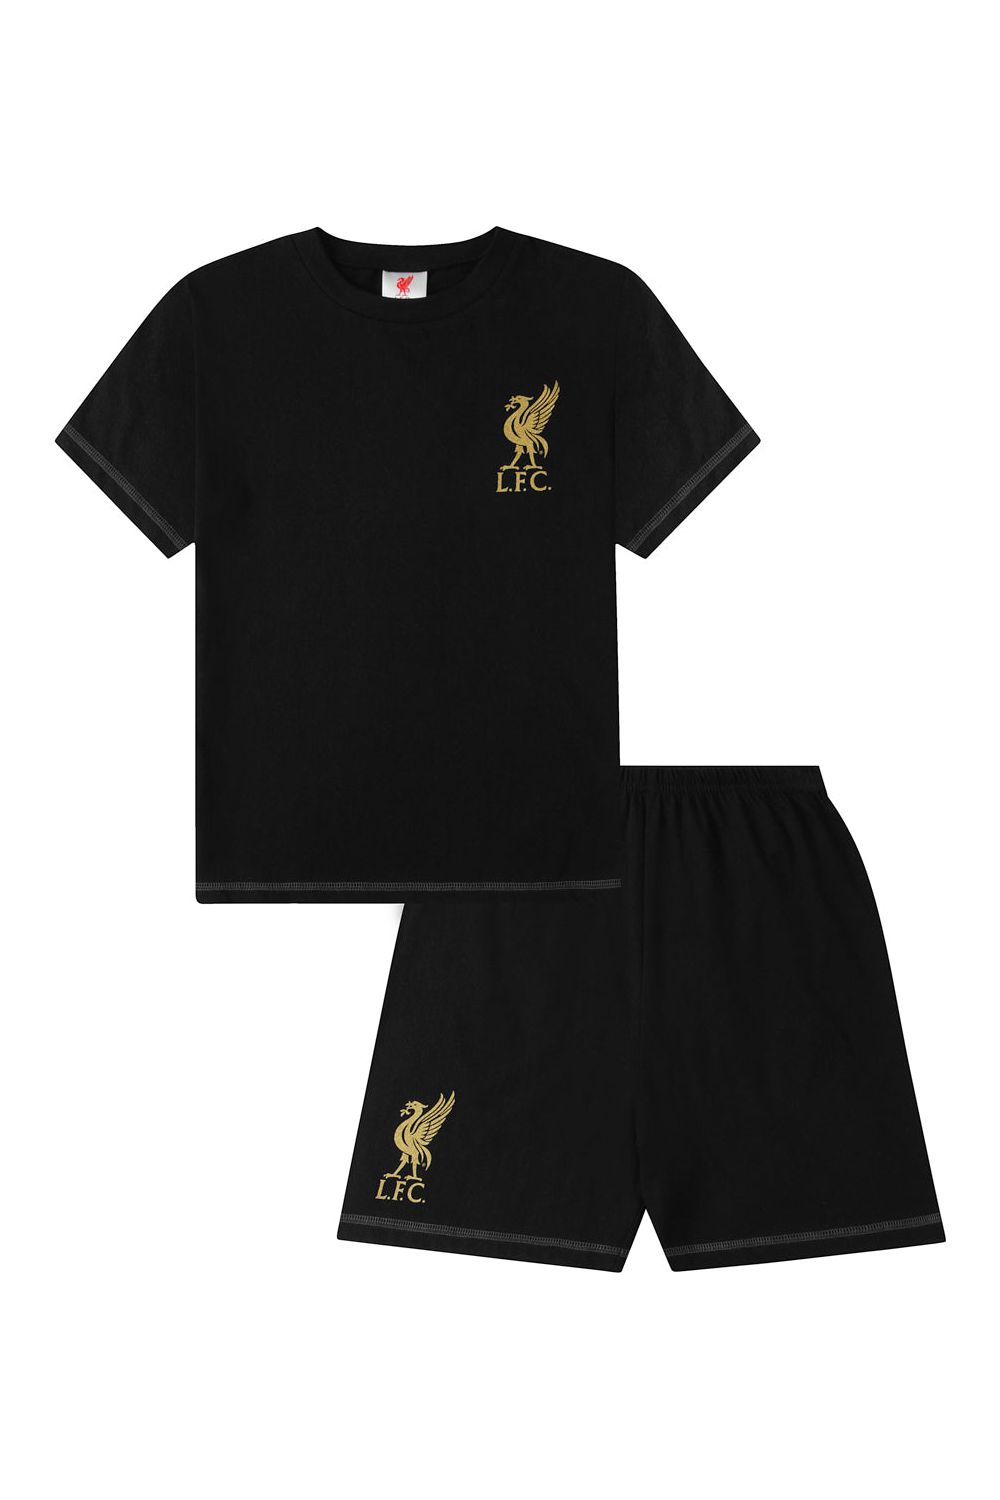 Mens Liverpool  F.C Black Gold Short Pyjamas - Pyjamas.com